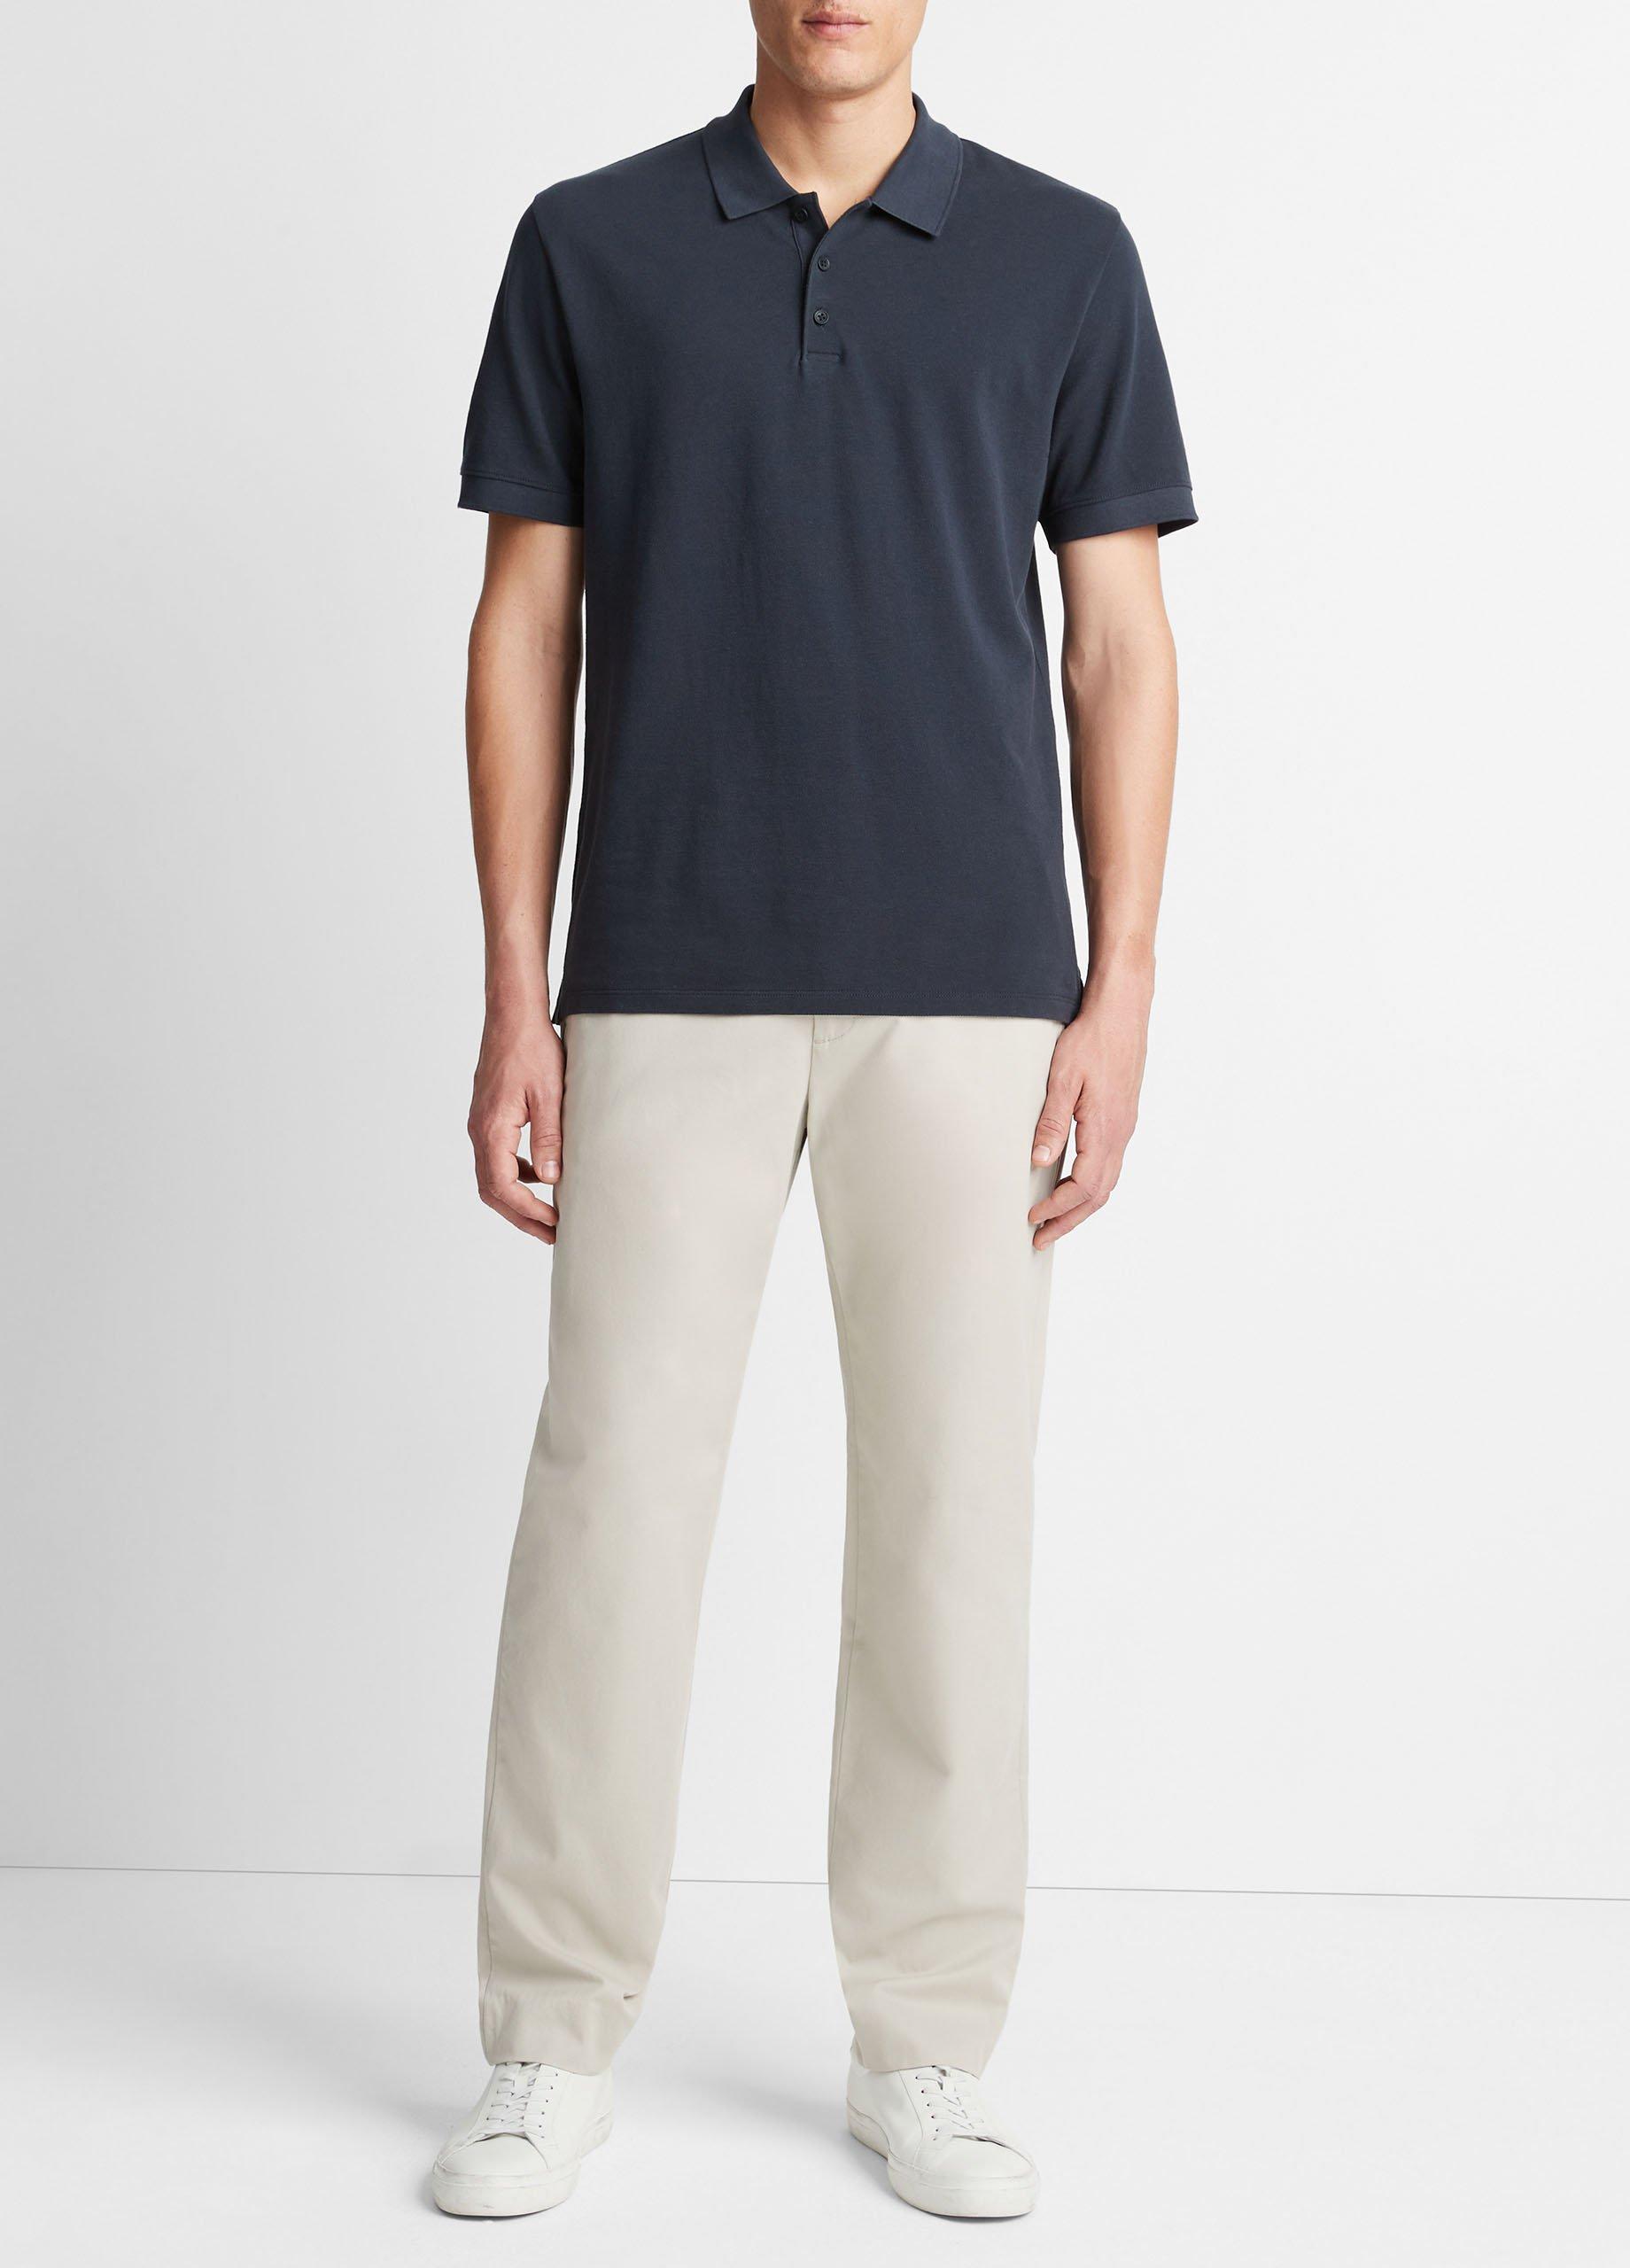 Cotton Piqué Polo Shirt, Coastal Blue, Size L Vince